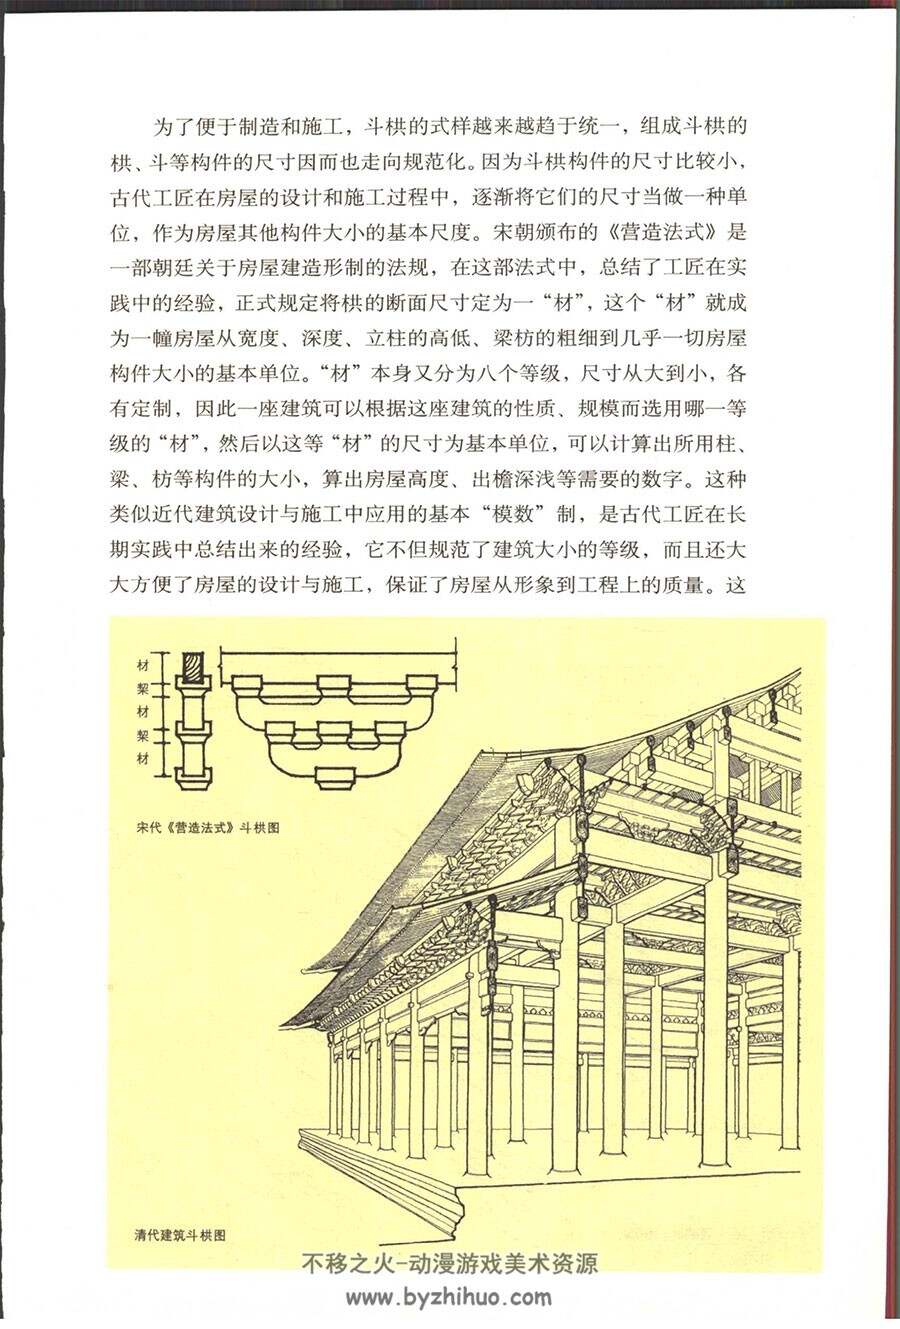 中国古建筑20讲 中国古典建筑图文详解 参考资料素材PDF百度网盘下载